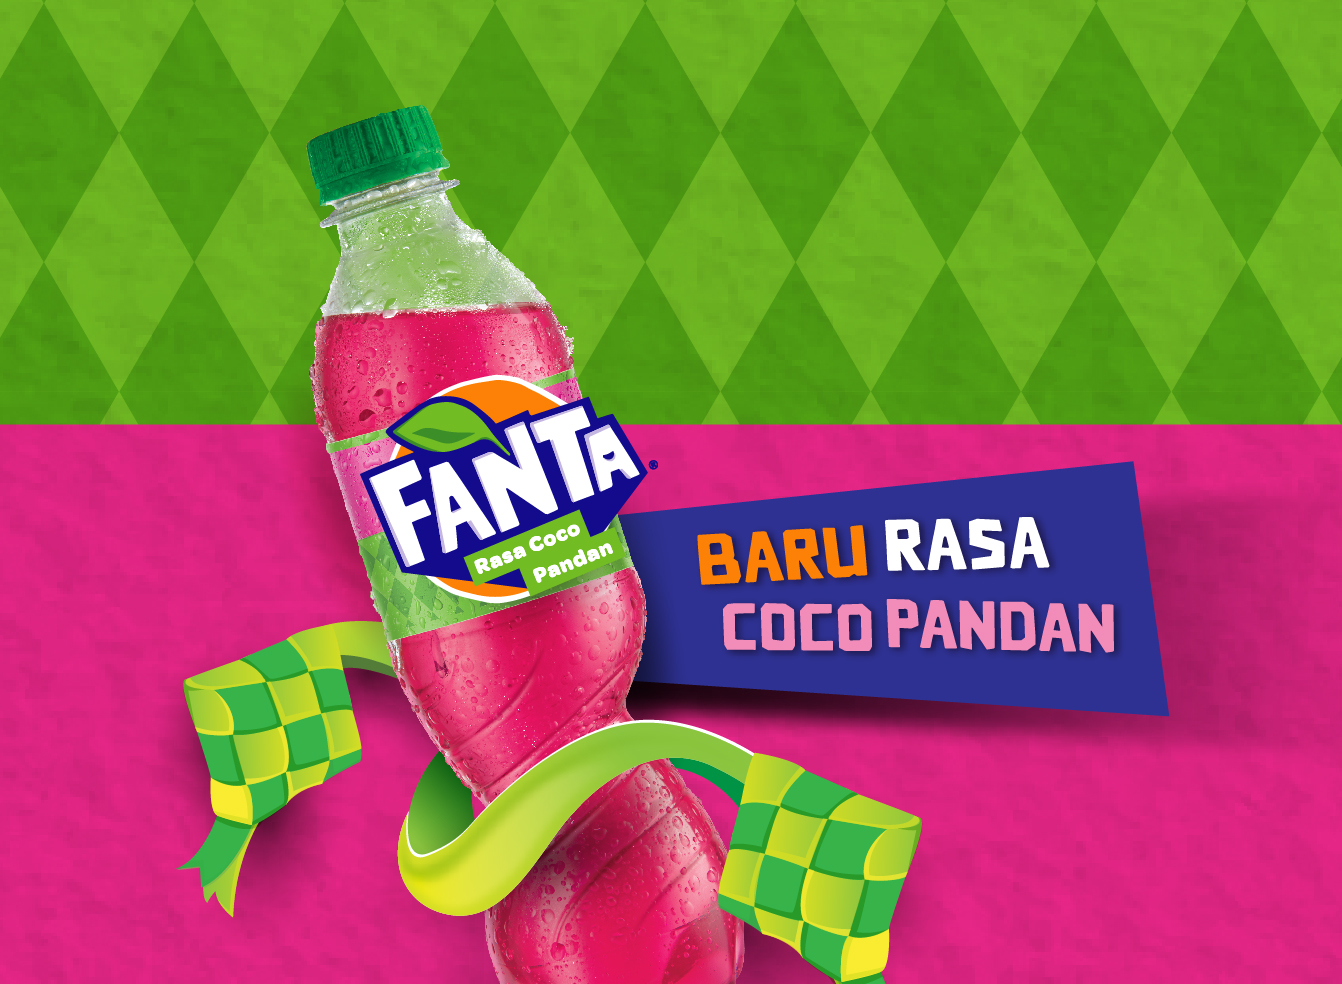 Fanta Coco Pandan